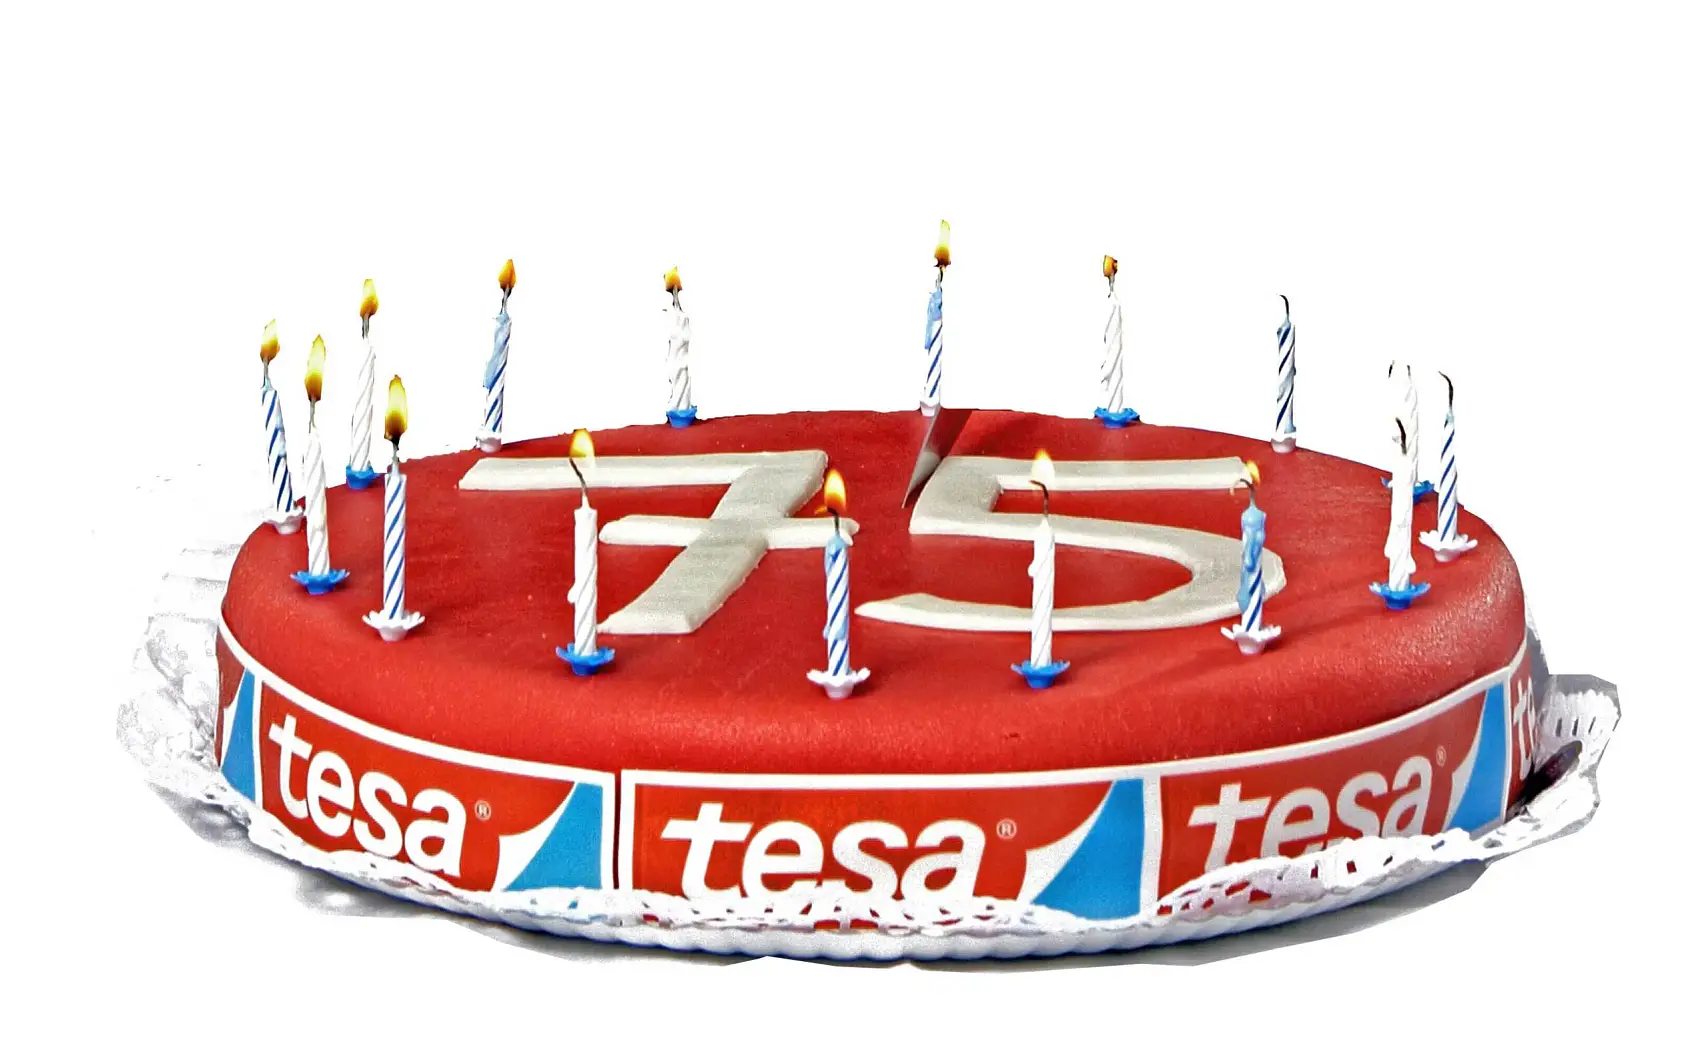 W 2011 r. firma tesa świętowała swój 75. jubileusz.